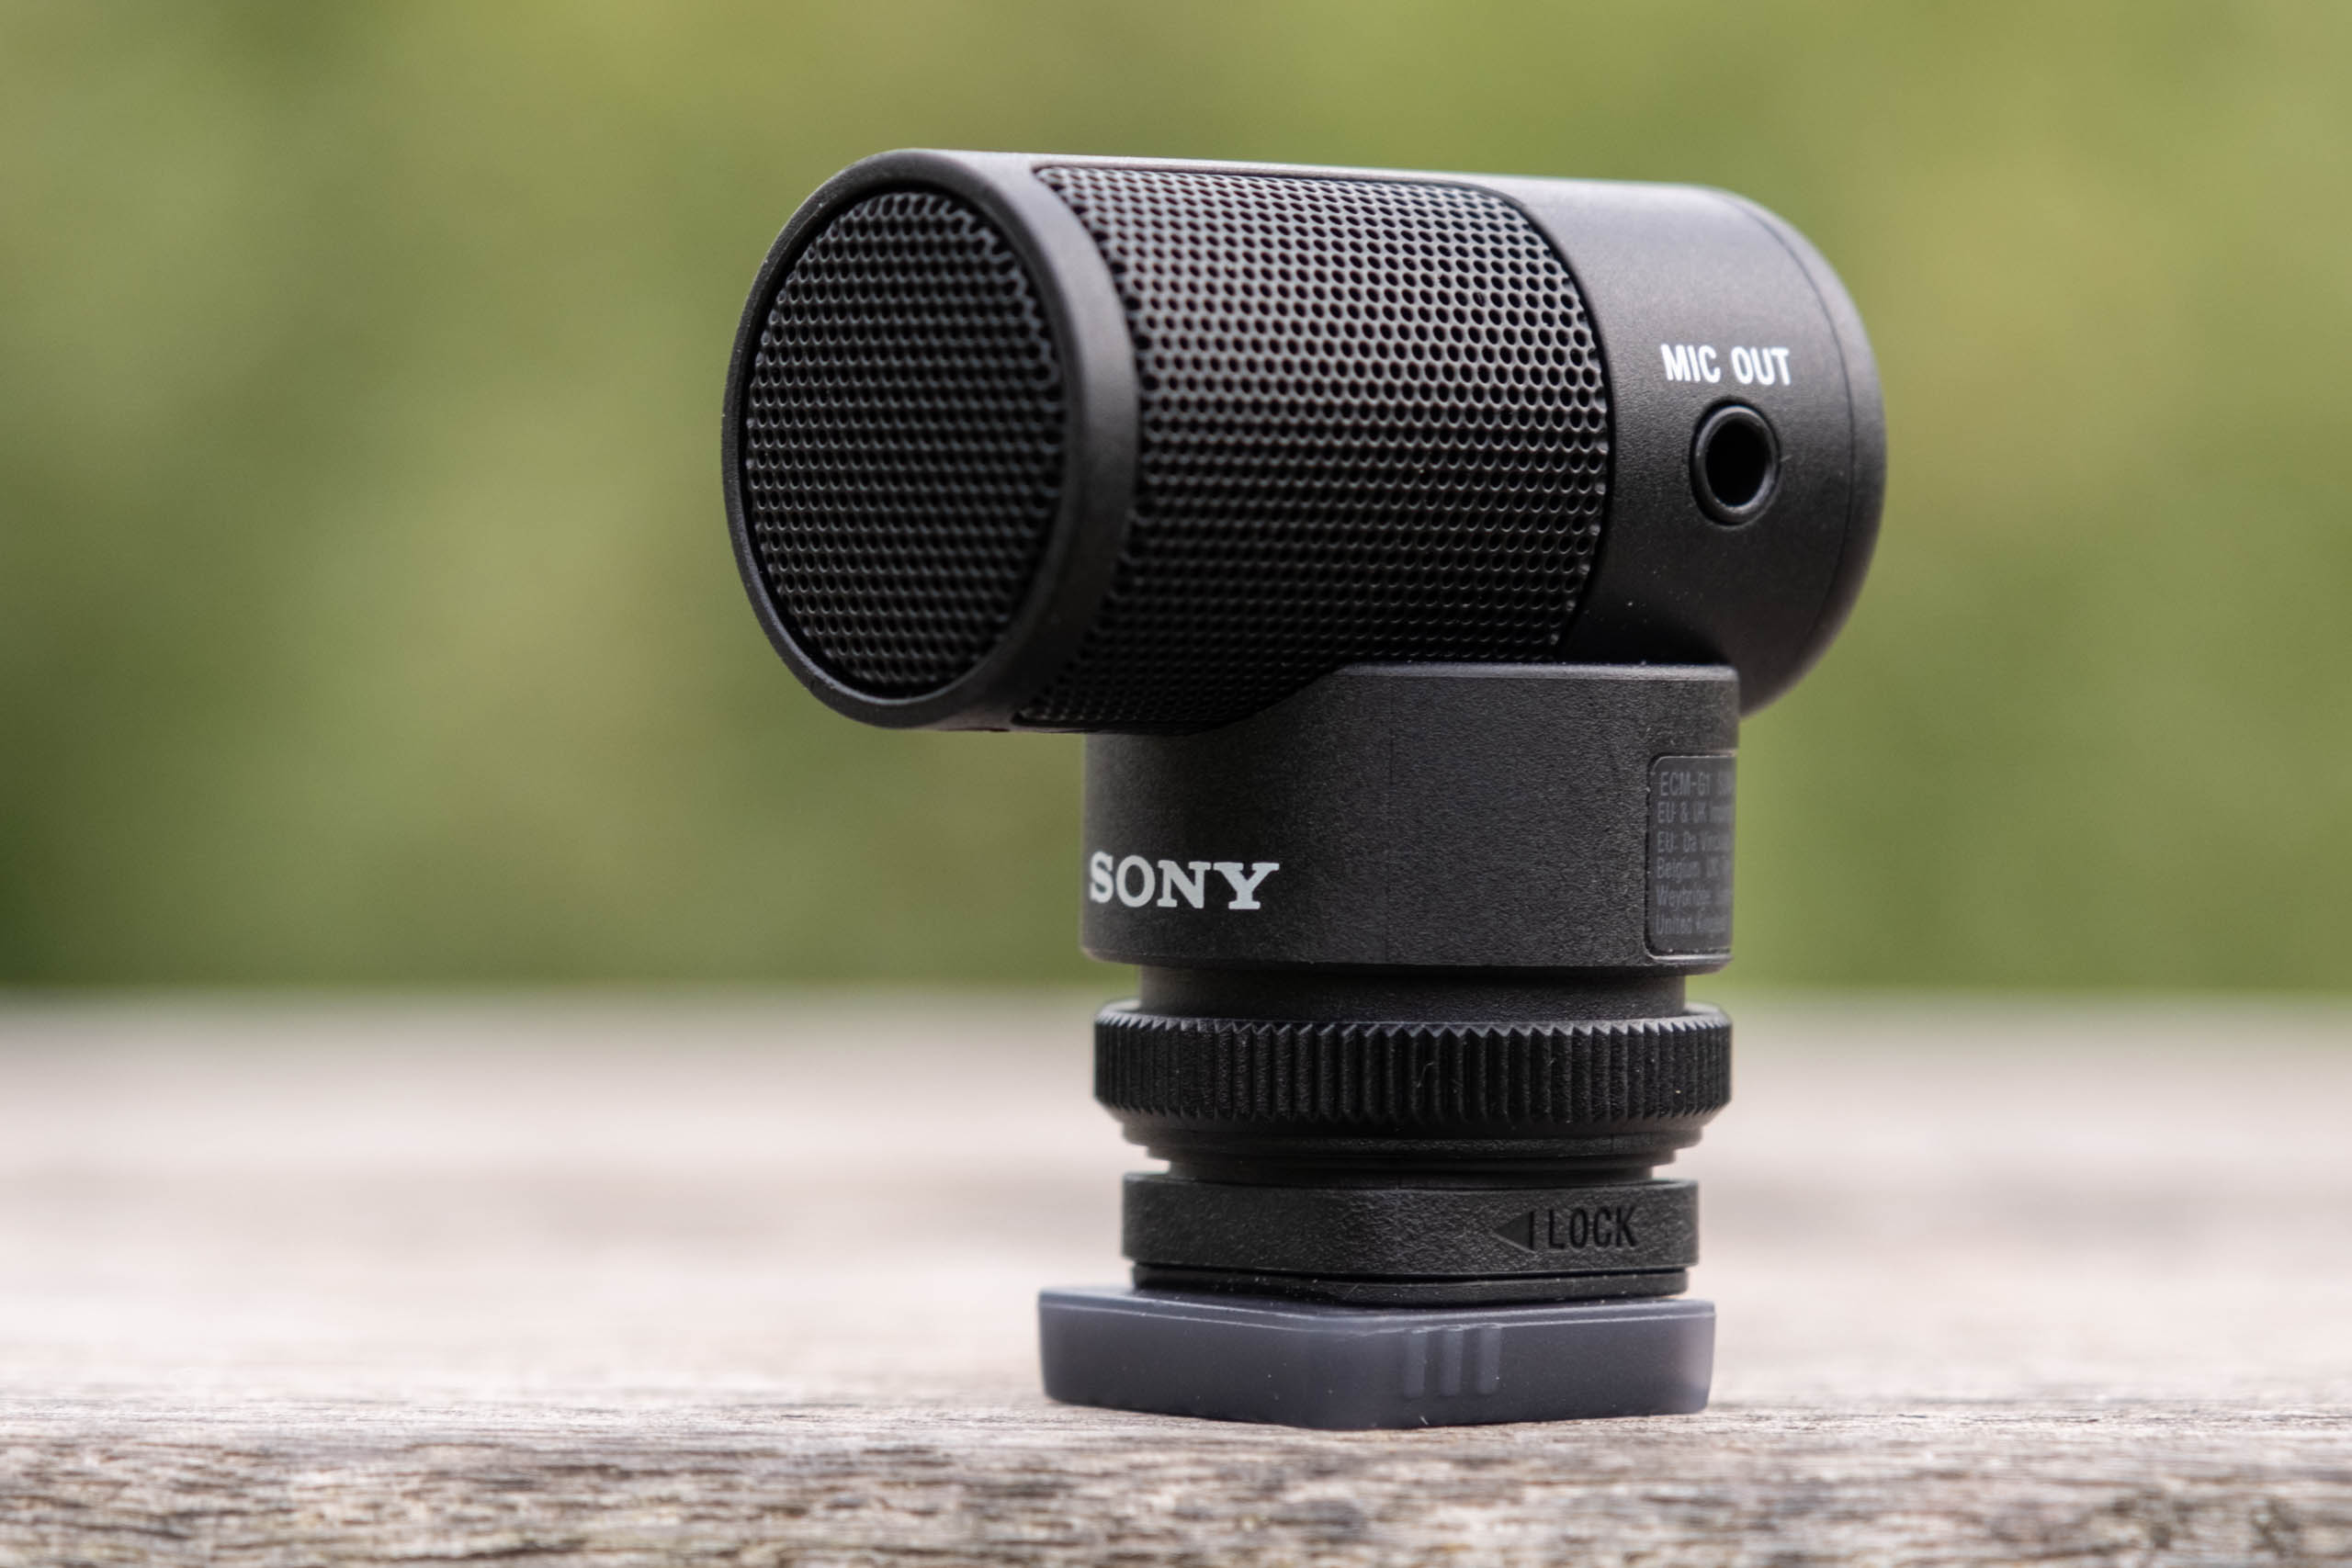 Sony ECM-G1 Shotgun Microphone review | Amateur Photographer